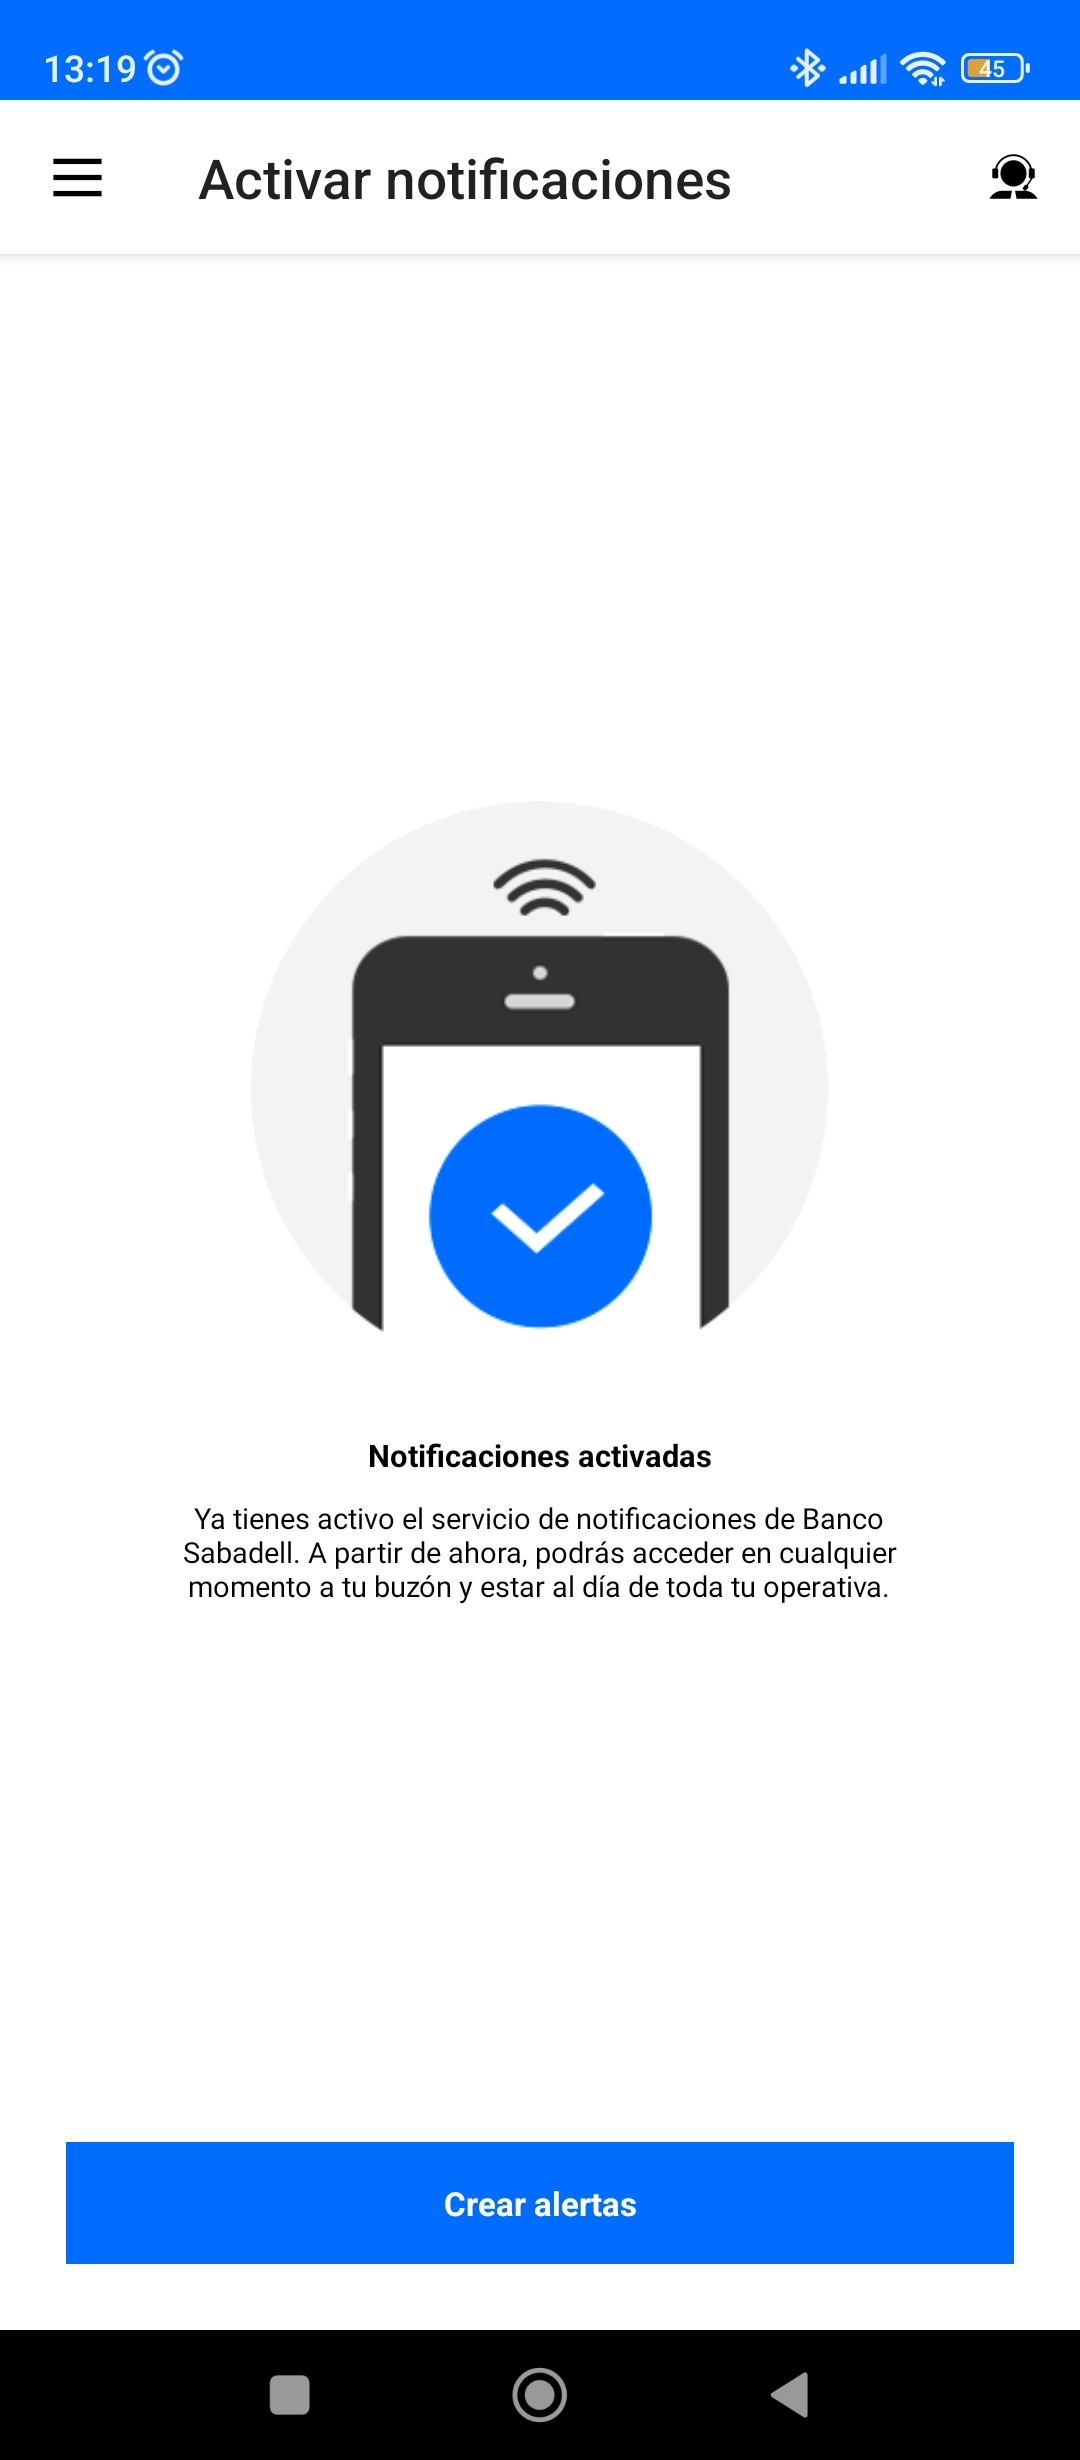 Captura en app Banco Sabadell proceso de activar notificaciones completado correctamente